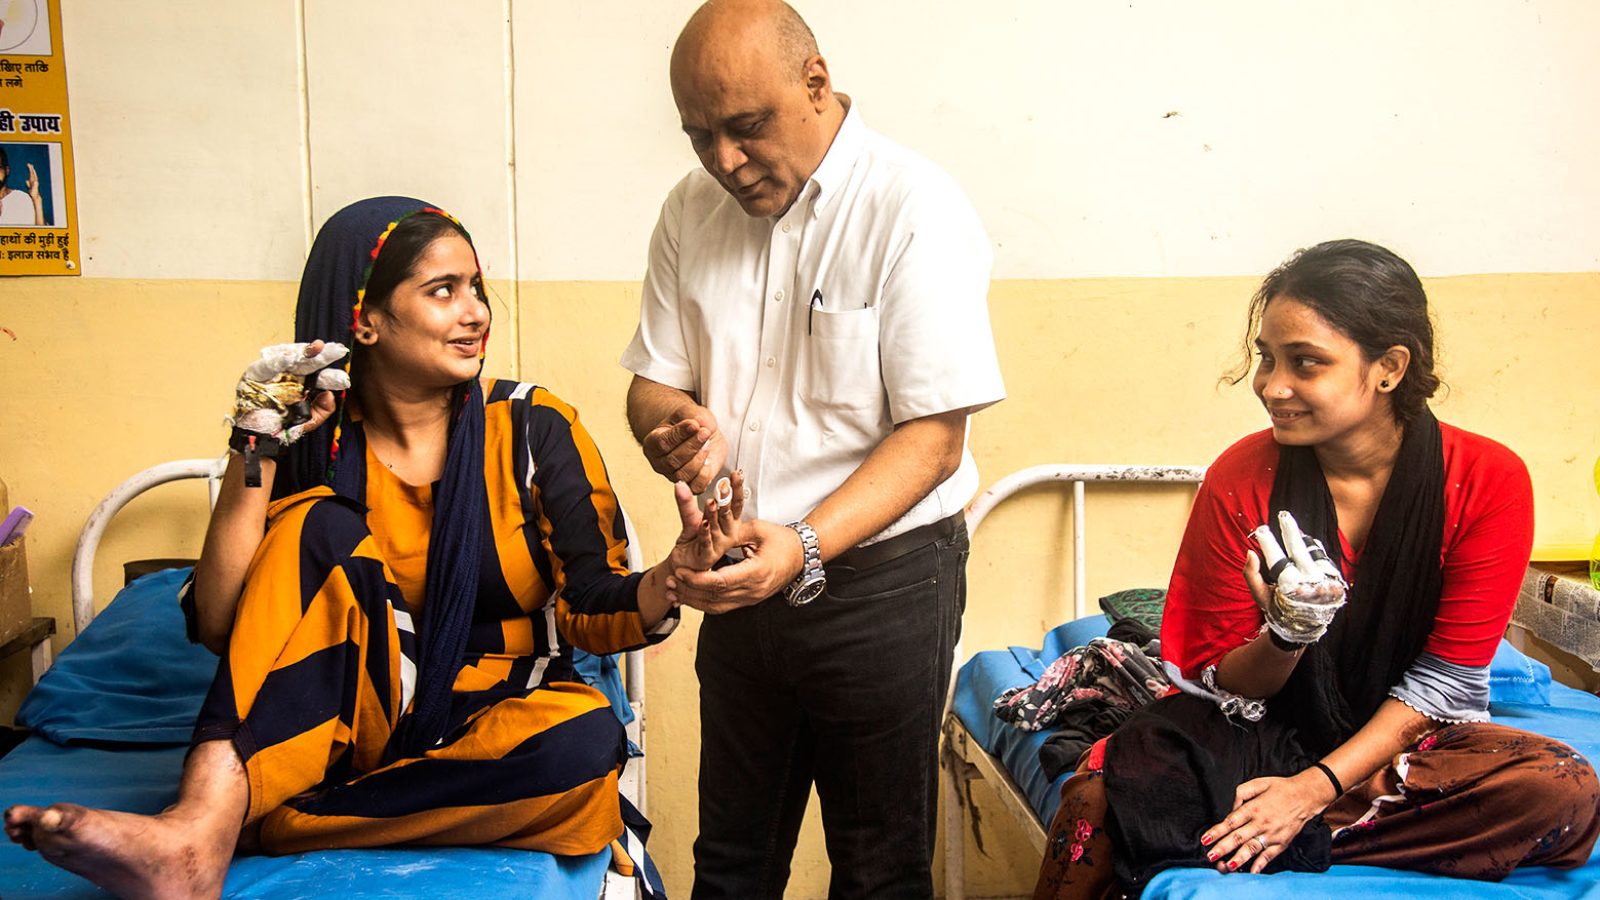 Ein Arzt untersucht zwei Leprapatientinnen in Indien